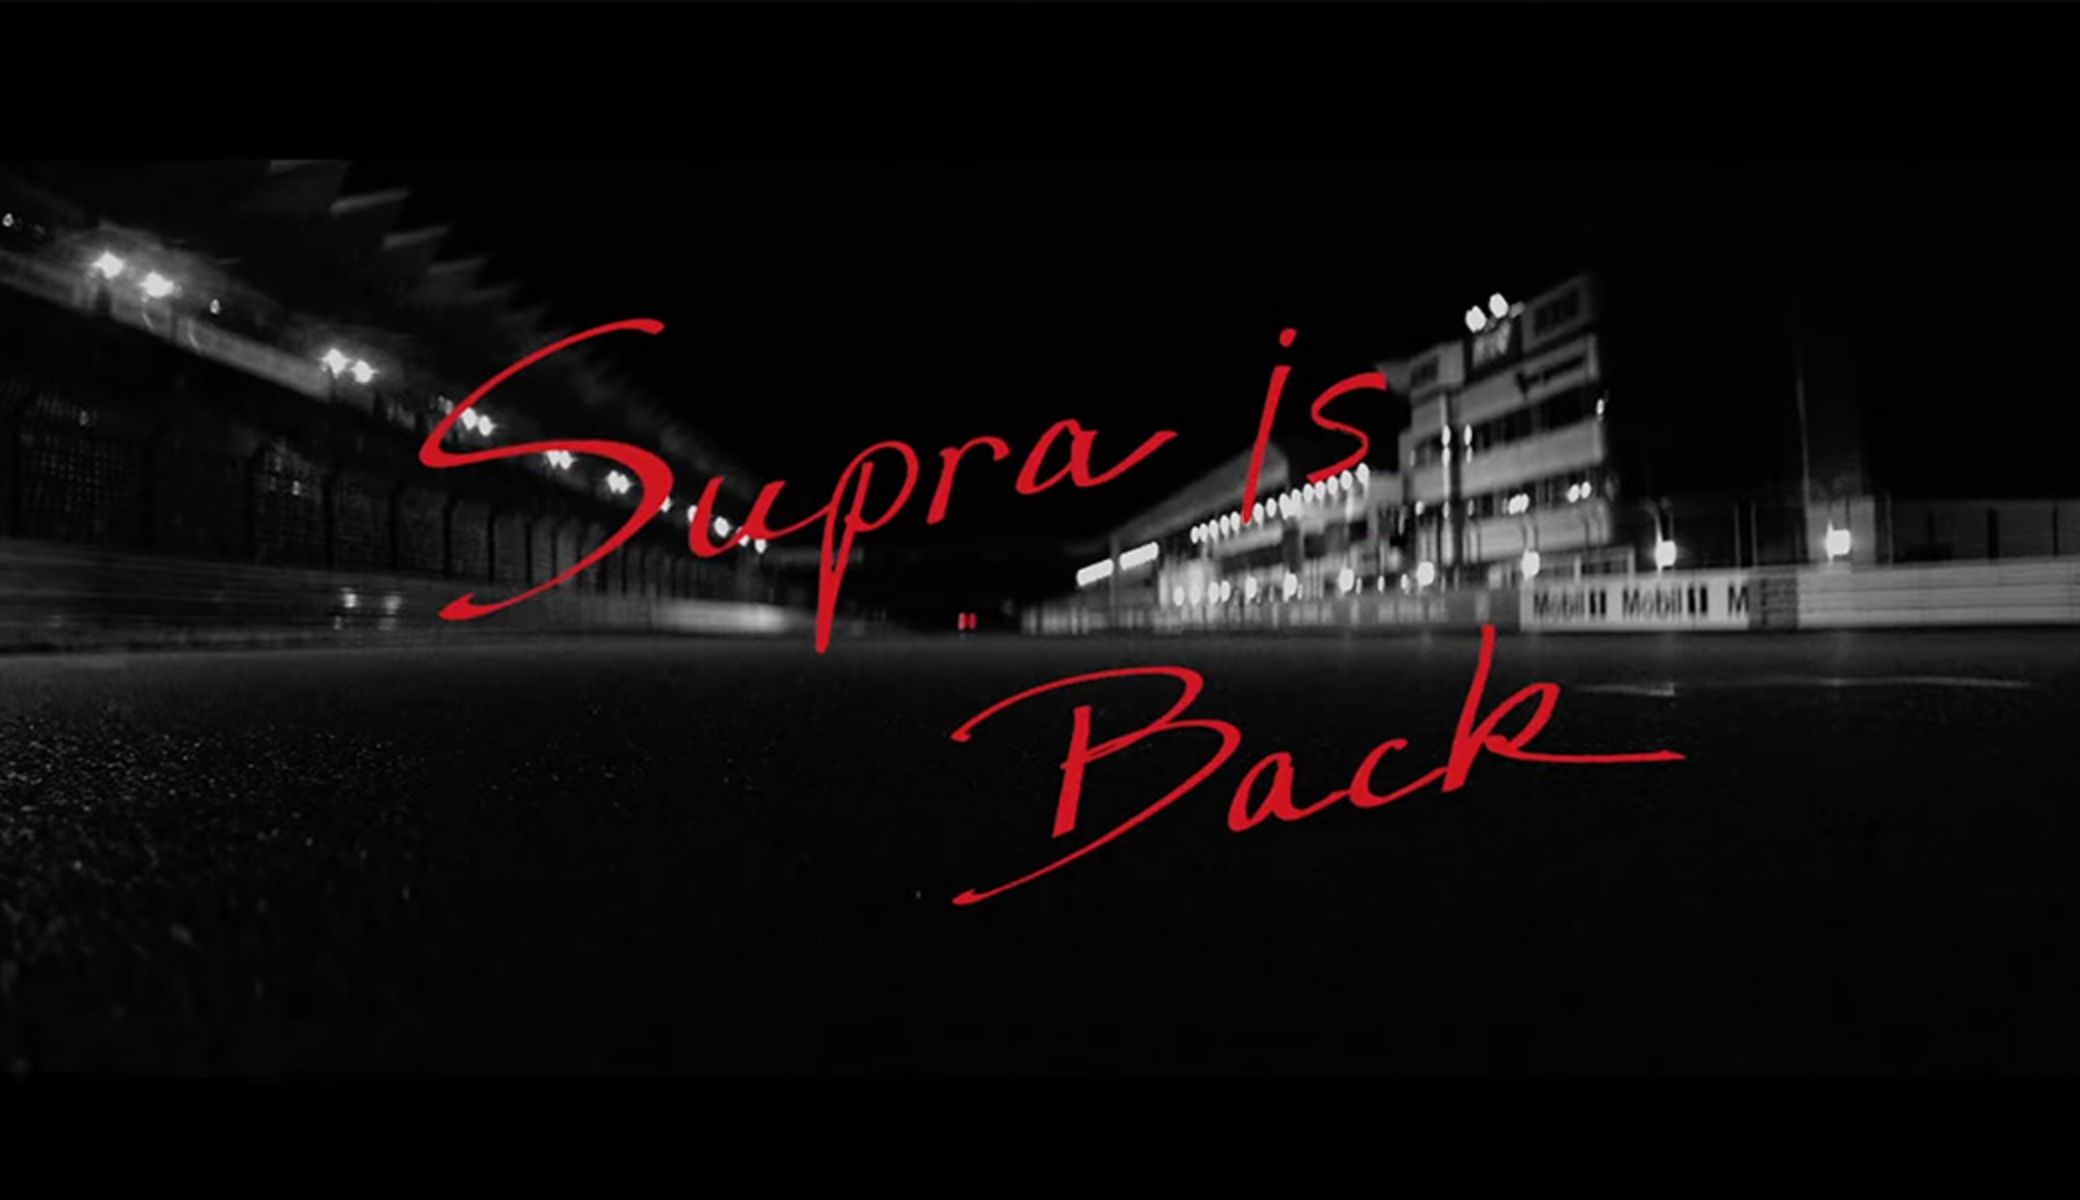 GR Supra is back